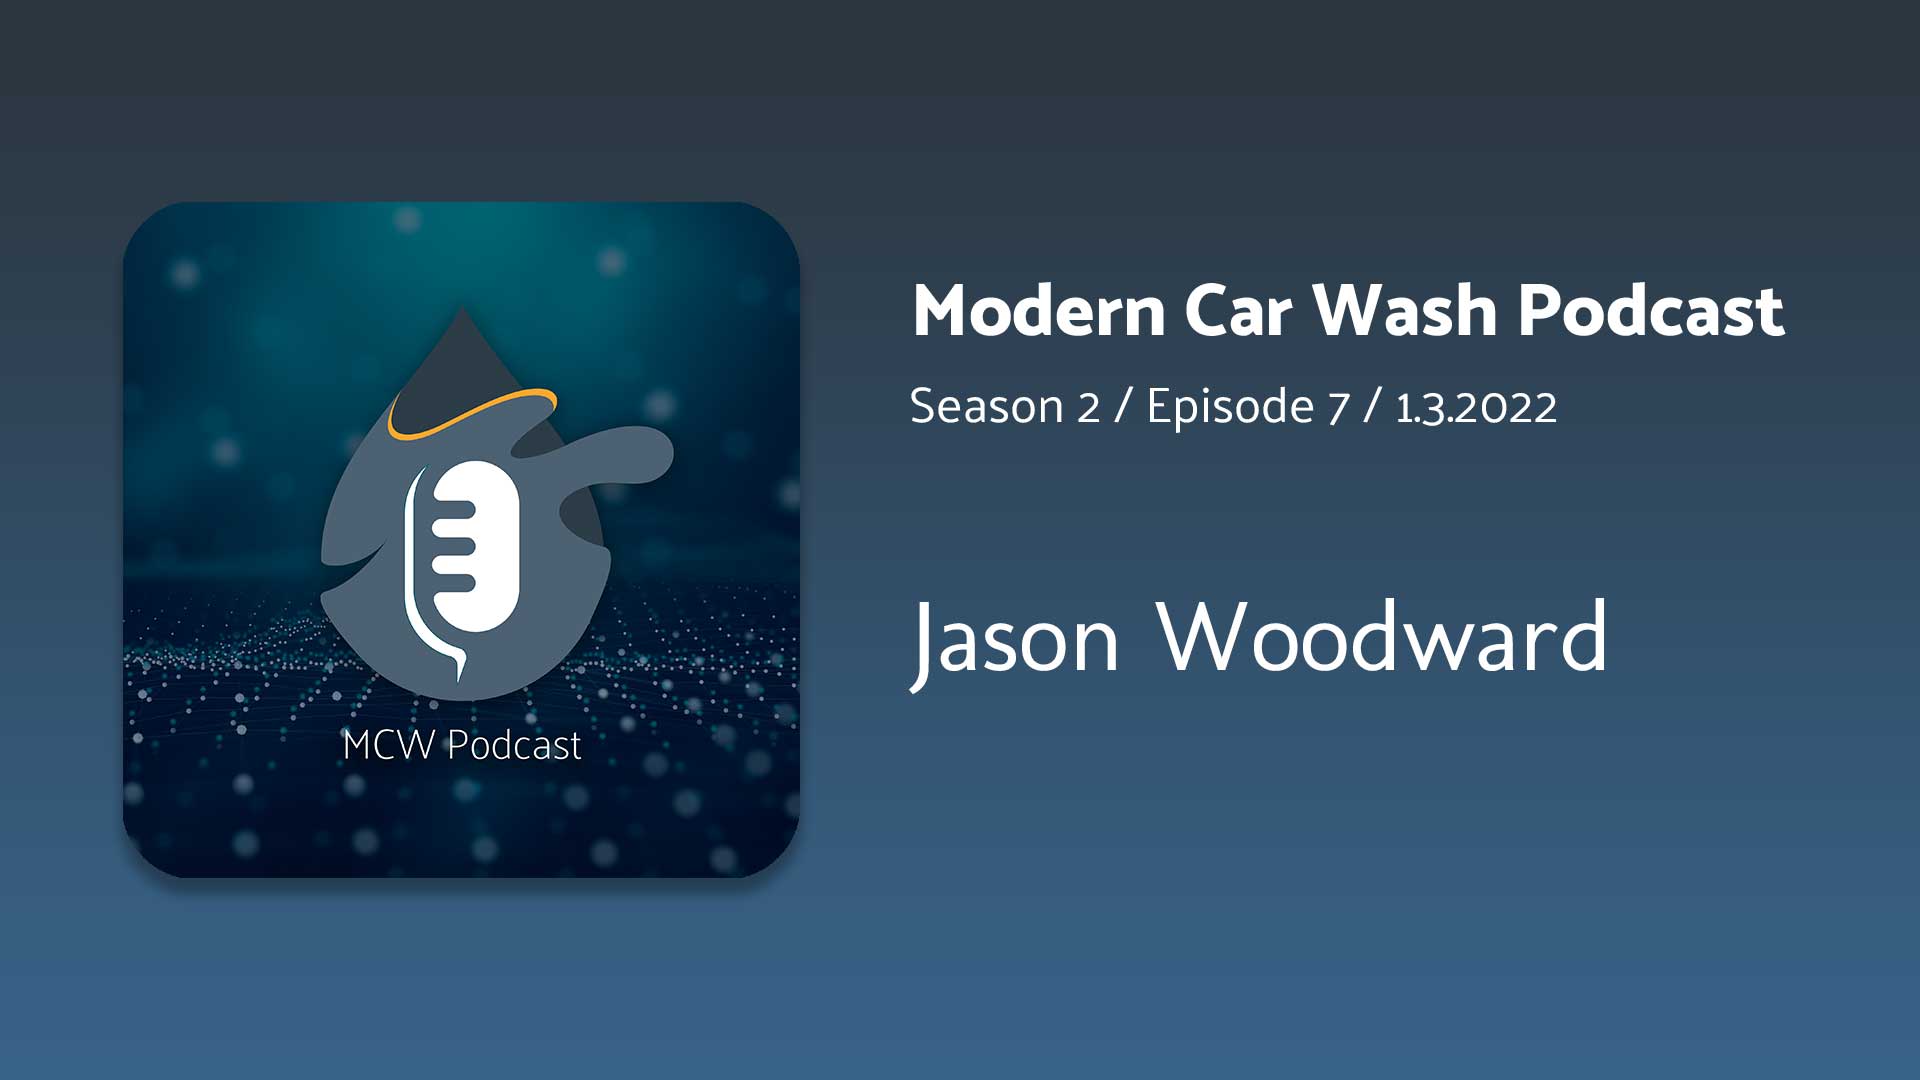 Jason Woodward